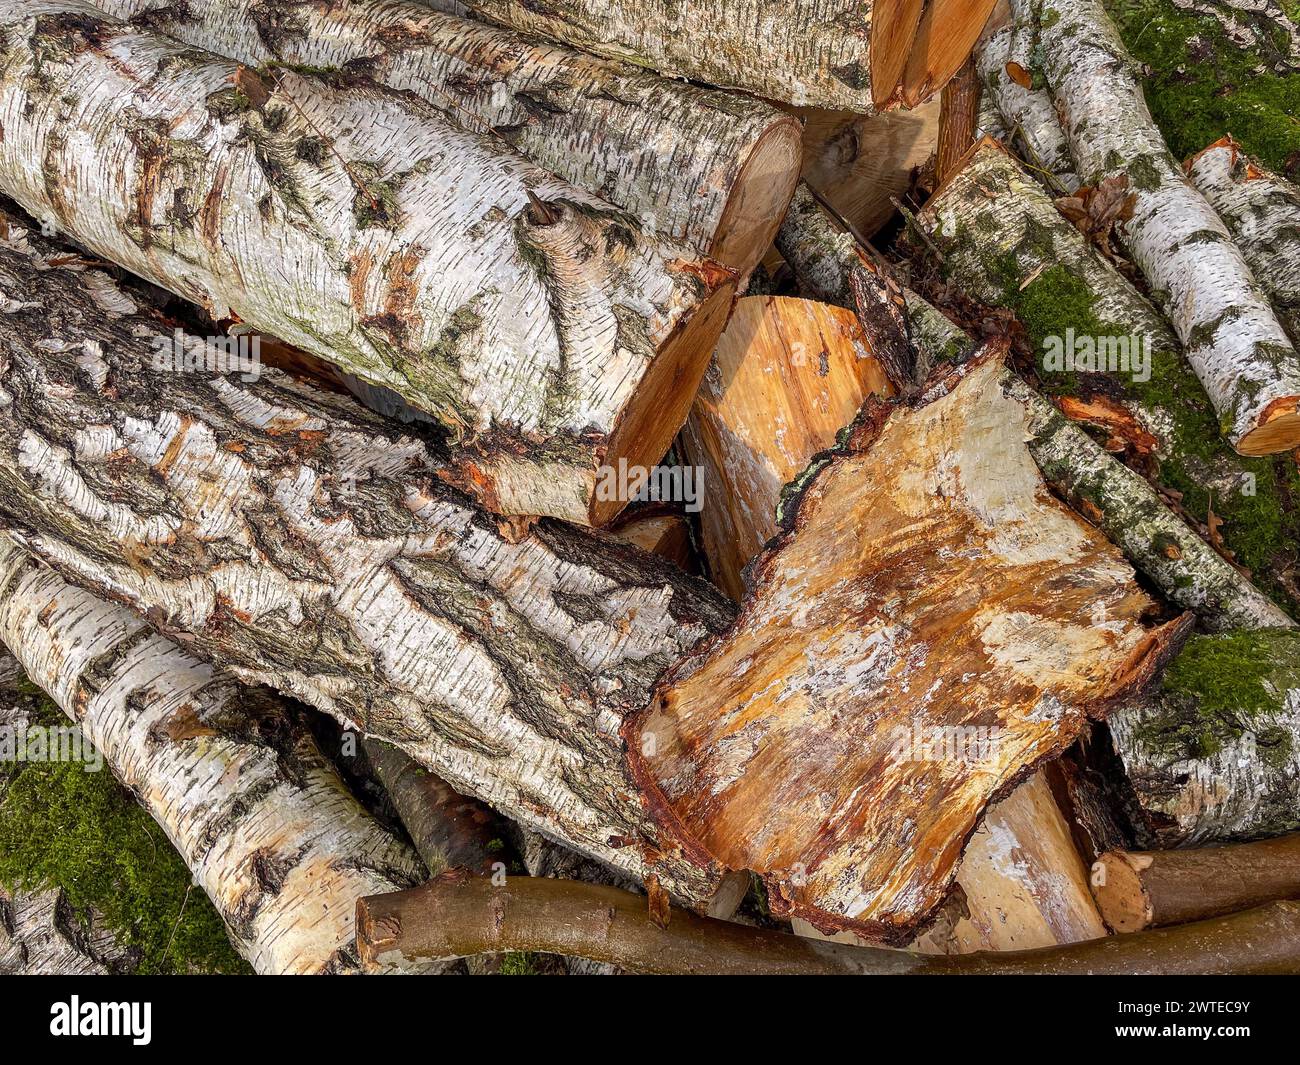 pile de bois de chauffage de bouleau dans le jardin Banque D'Images